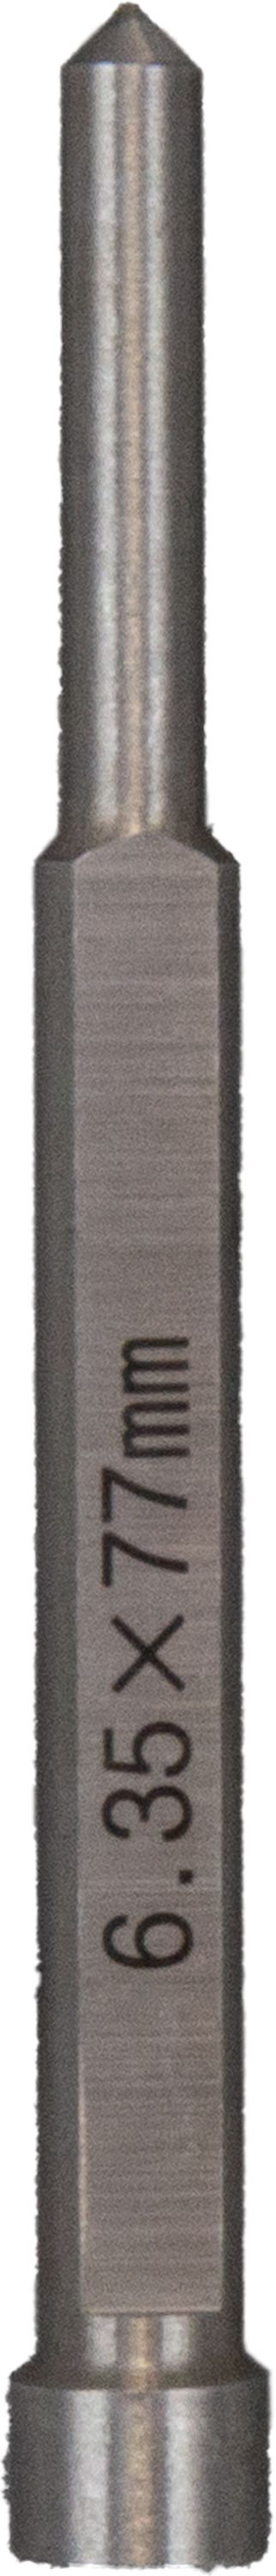 Mag Drill Pilot Pins